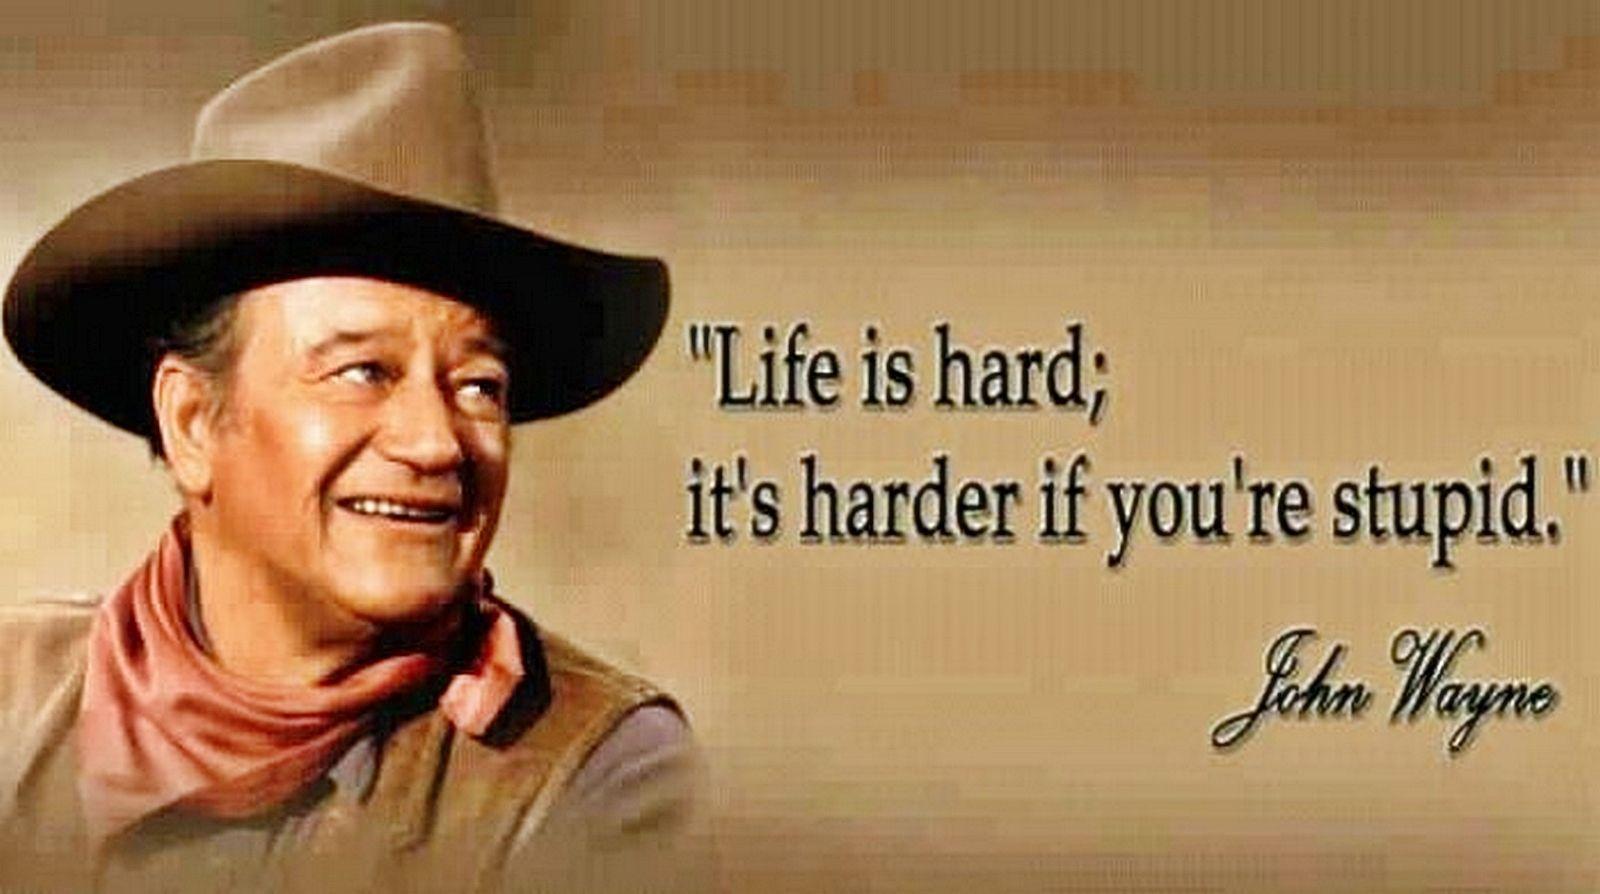 John Wayne Patriotic Quotes John Wayne Quotes. John Wayne Quotes